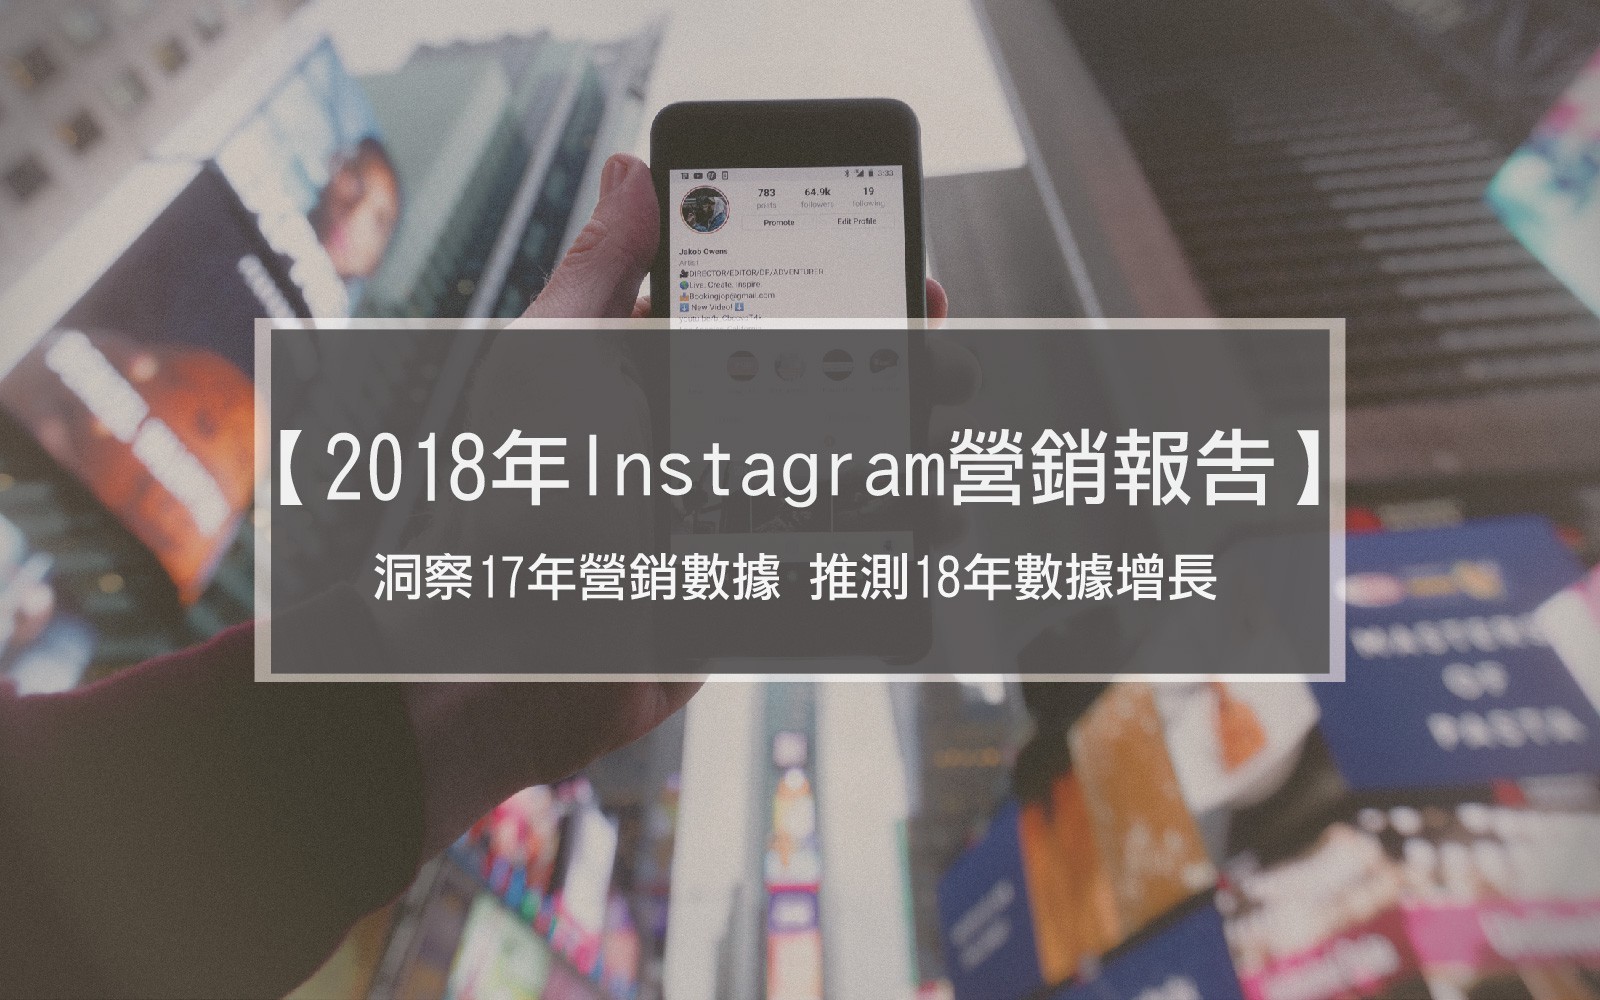 2018年Instagram營銷報告- 洞察17年營銷數據 推測18年數據增長